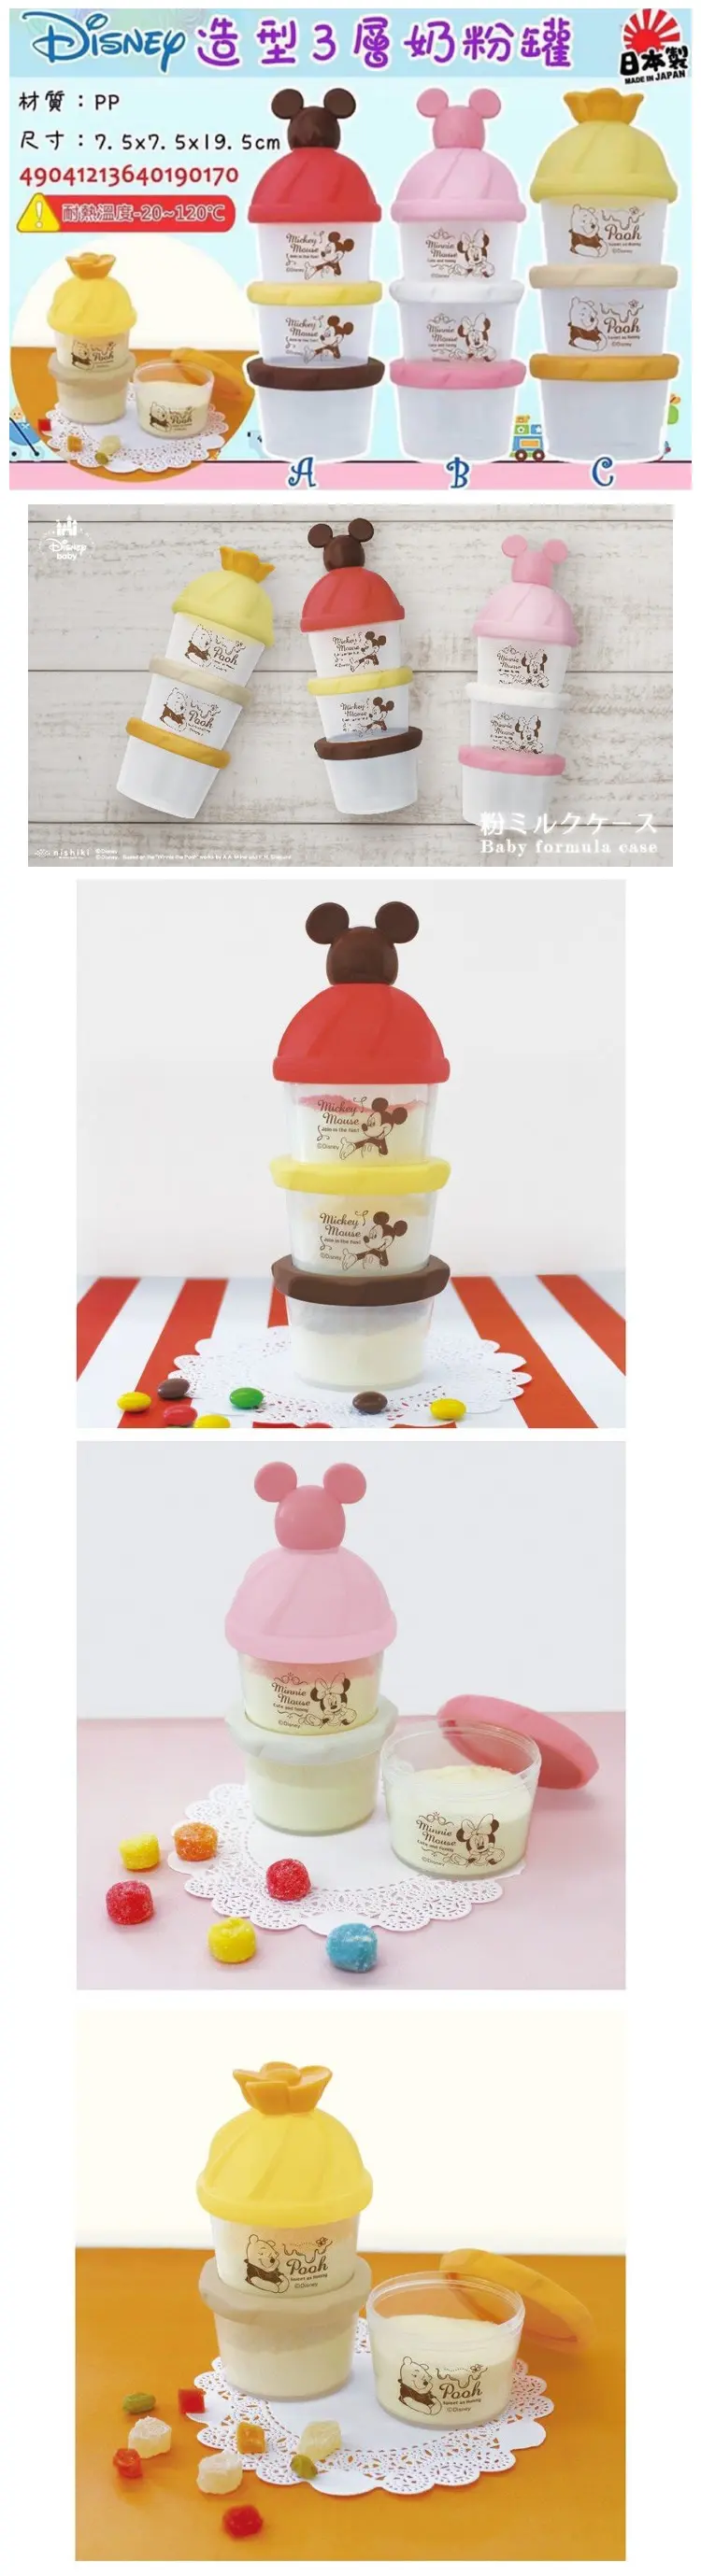 Disney 三层奶粉格食物盒-米妮